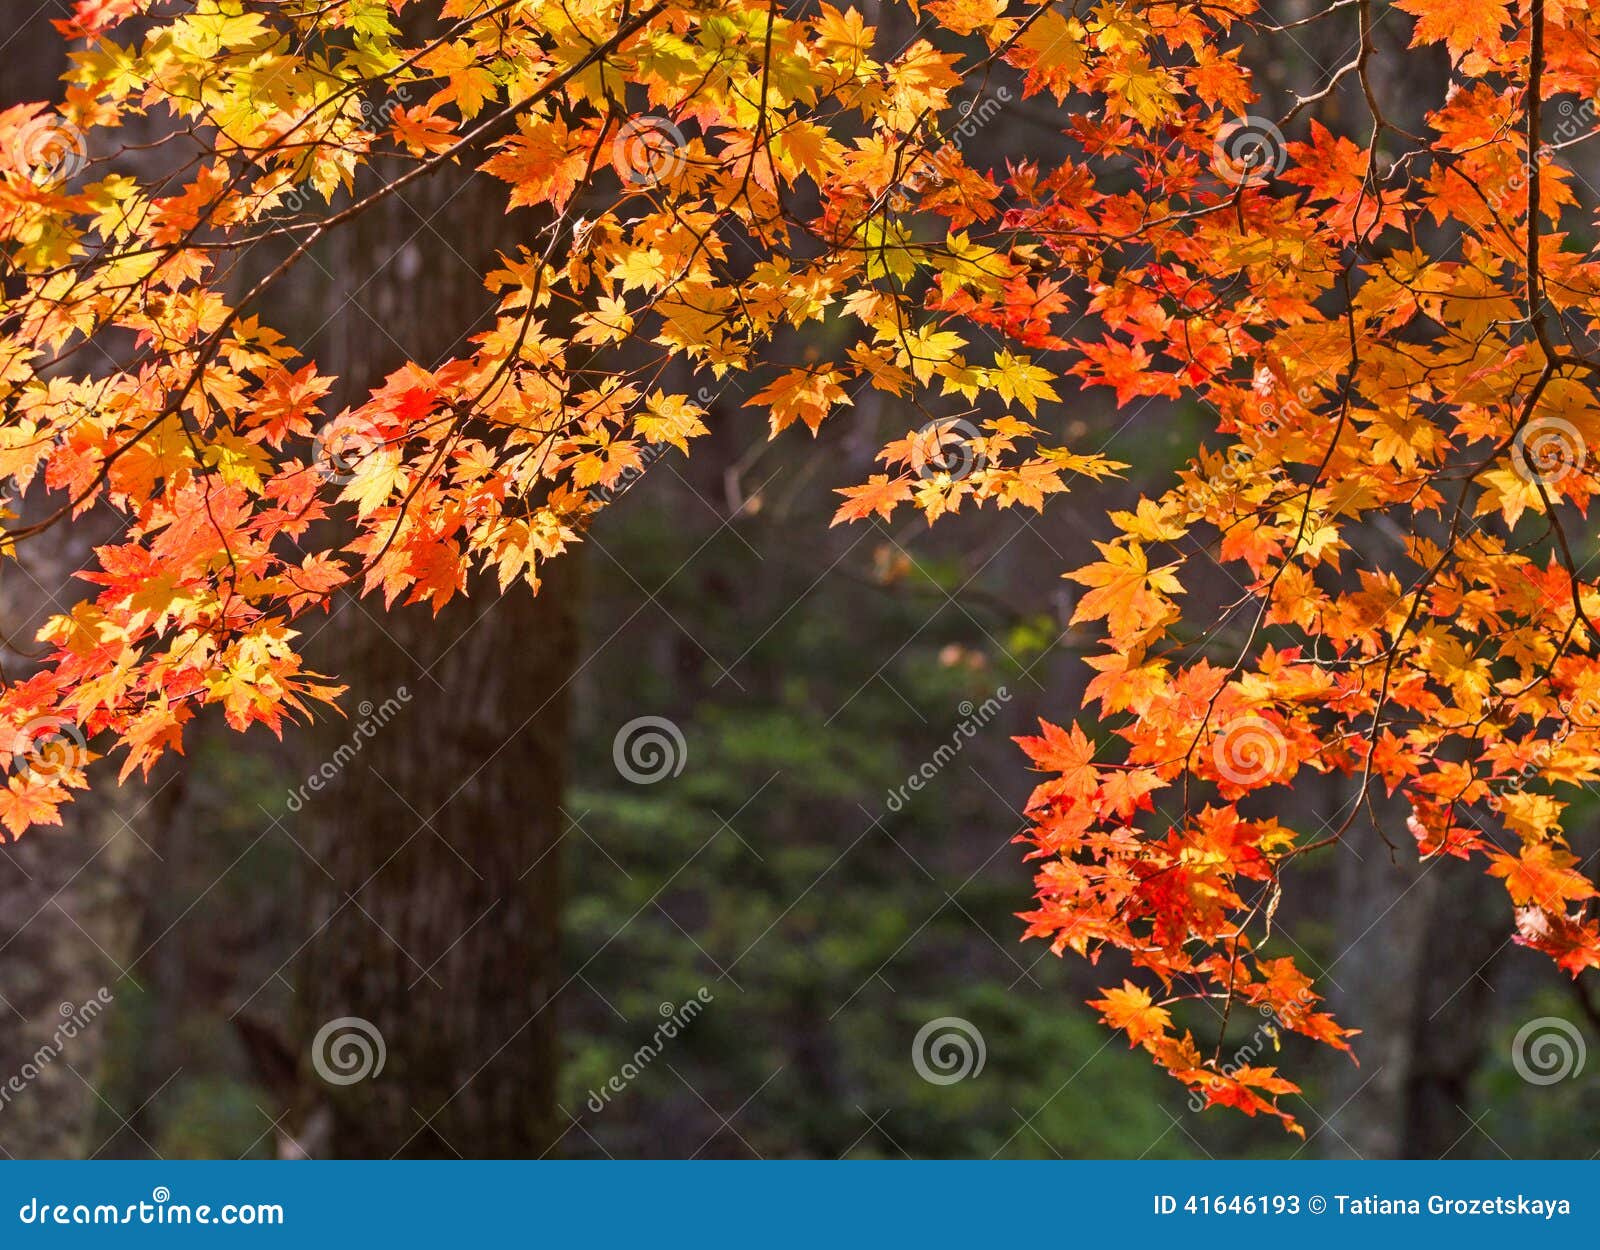 autumn, maple leaves, autumnal foliage